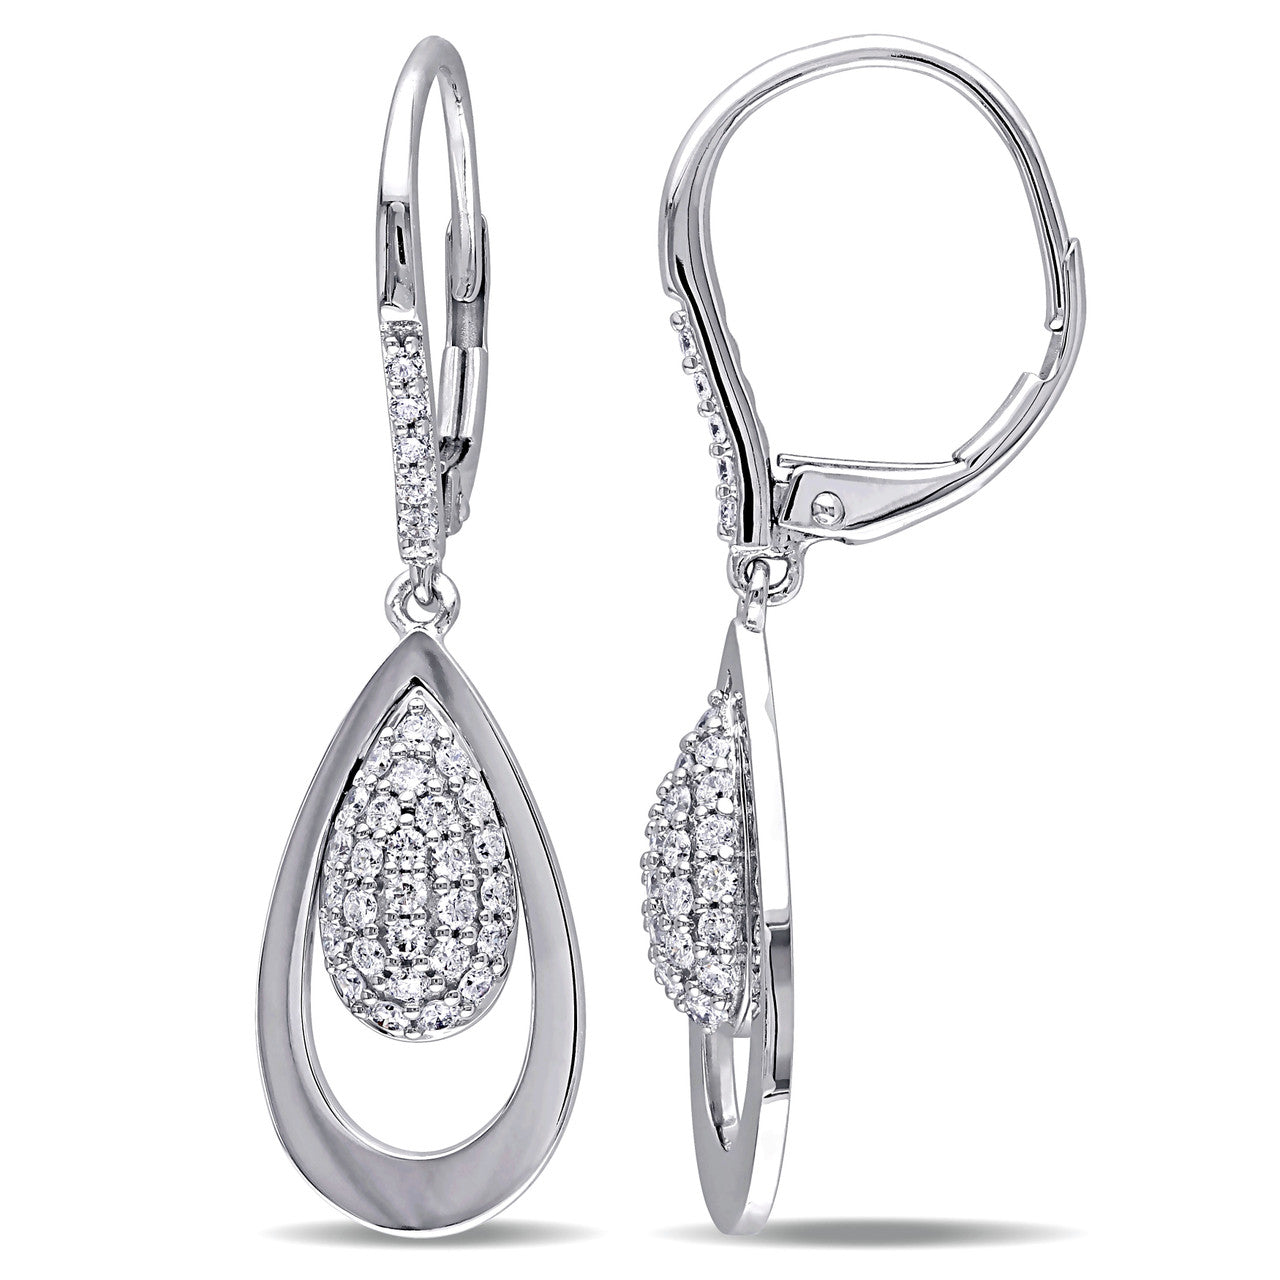 Julianna B Diamond Leverback Earrings in 14k White Gold - 75000002118 | Ice Jewellery Australia